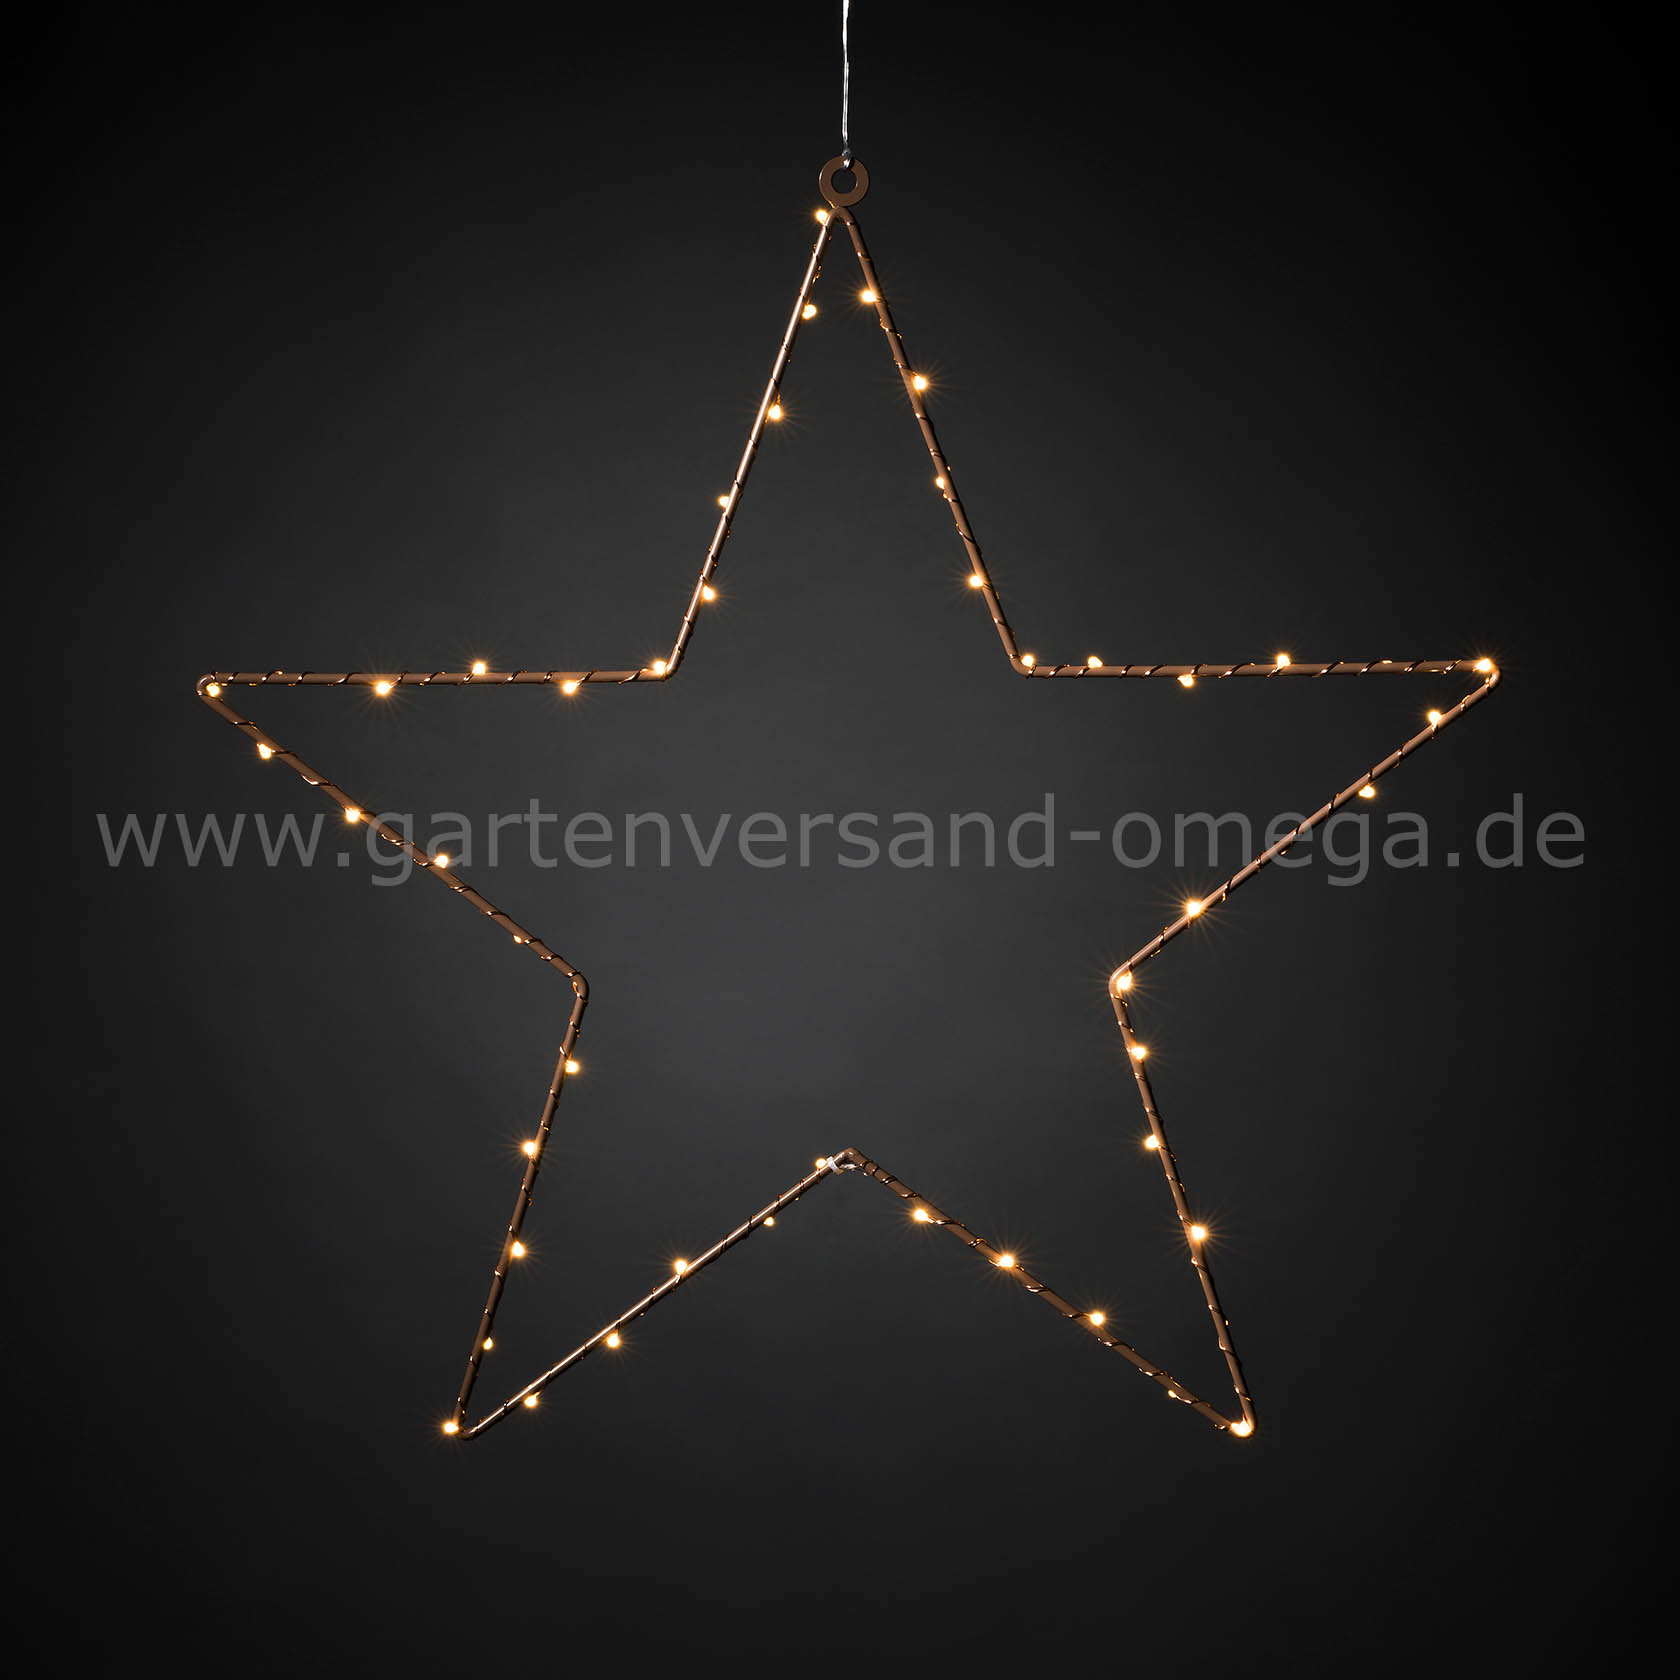 LED Metallstern hängend - Metallsilhouette mit LED, Weihnachtsstern, zum aus Adventsstern, Weihnachtsdeko Metallstern Stern, Weihnachtsdeko Deko-Weihnachtsstern Weihnachtsbeleuchtung, Metall, aufhängen